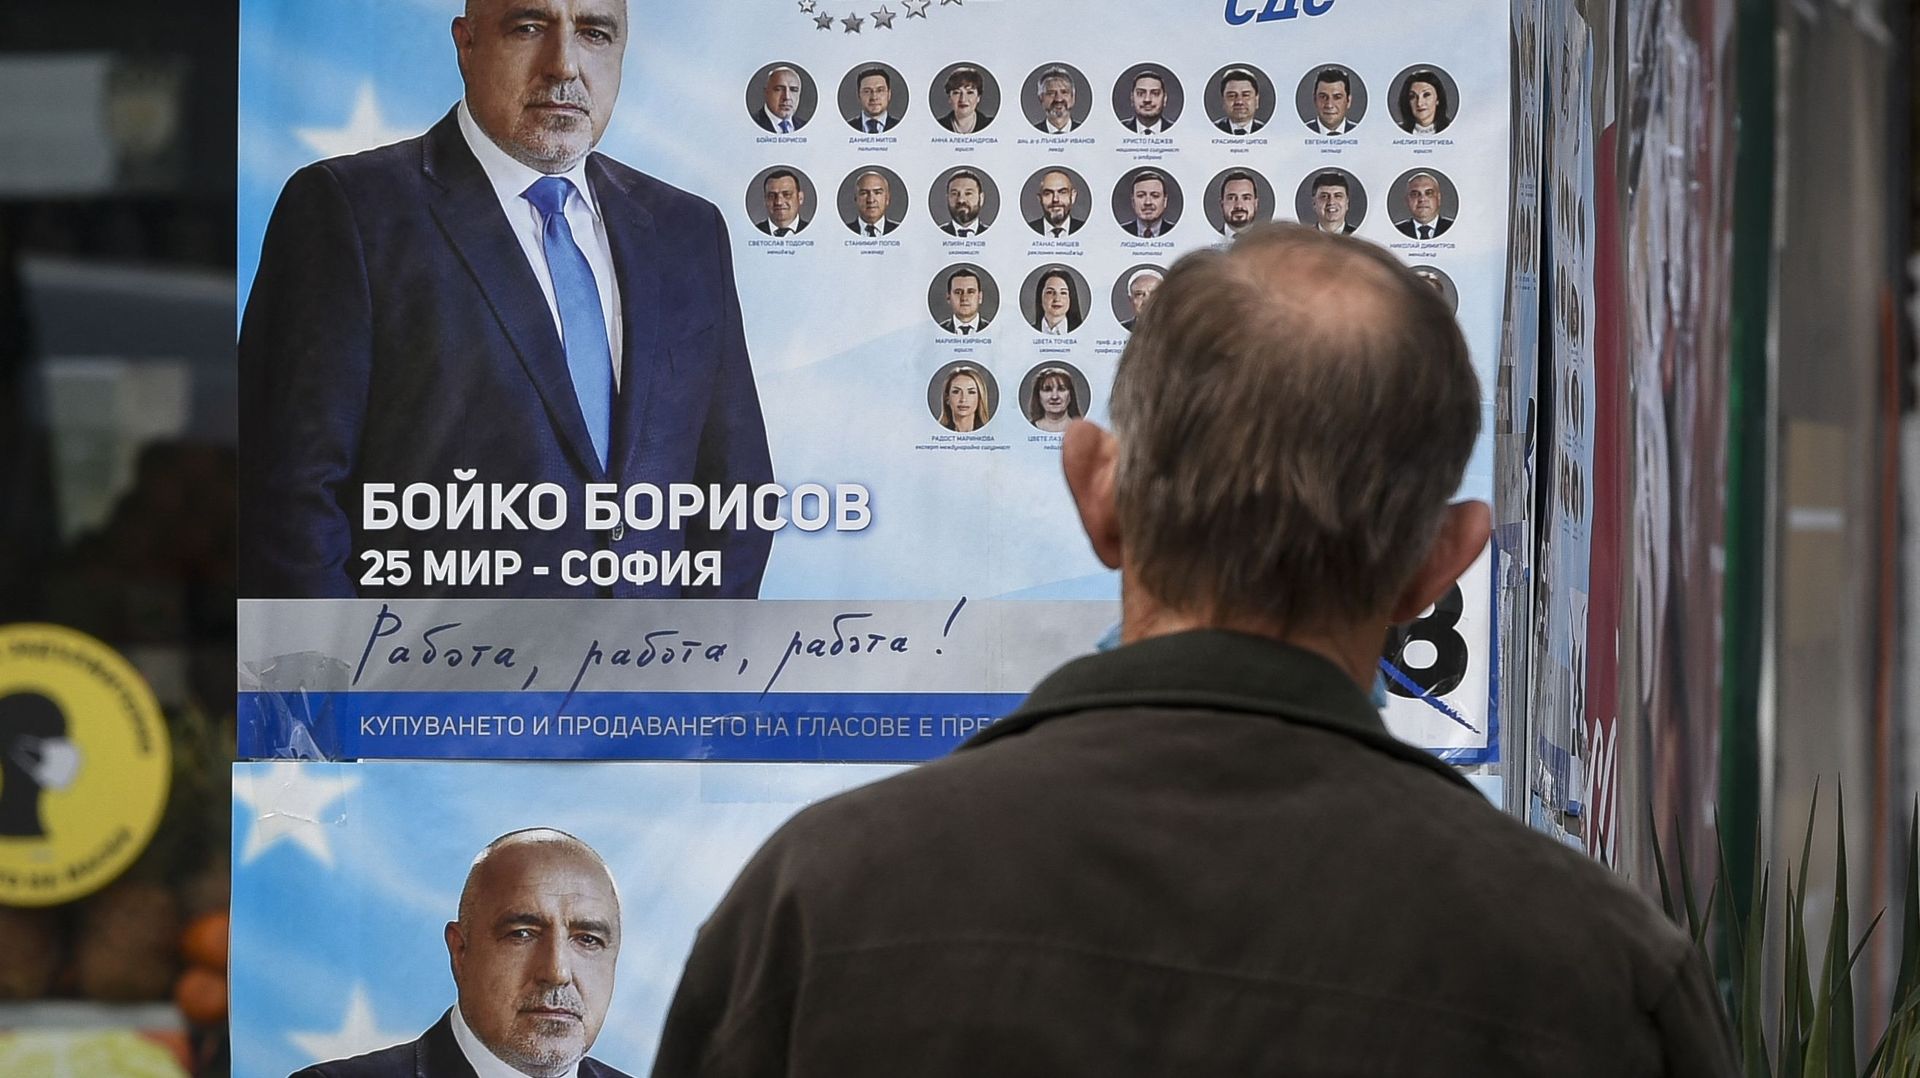 En Bulgarie, la formation arrivée en tête aux élections échoue à former un gouvernement